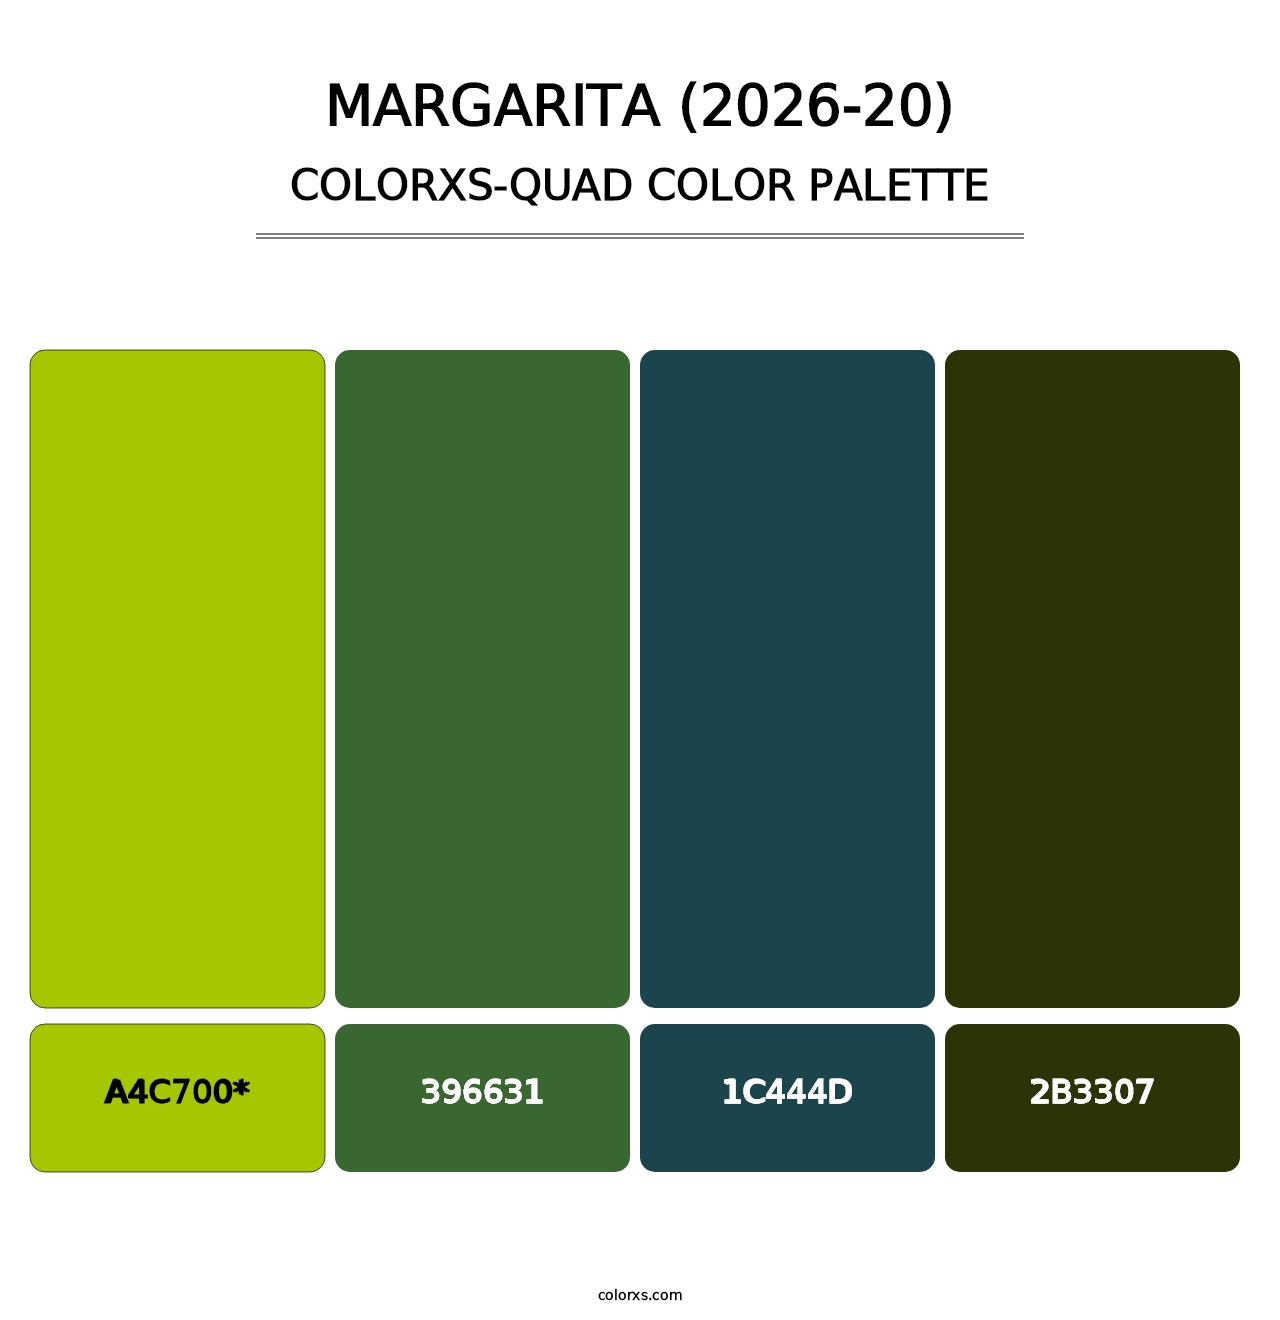 Margarita (2026-20) - Colorxs Quad Palette